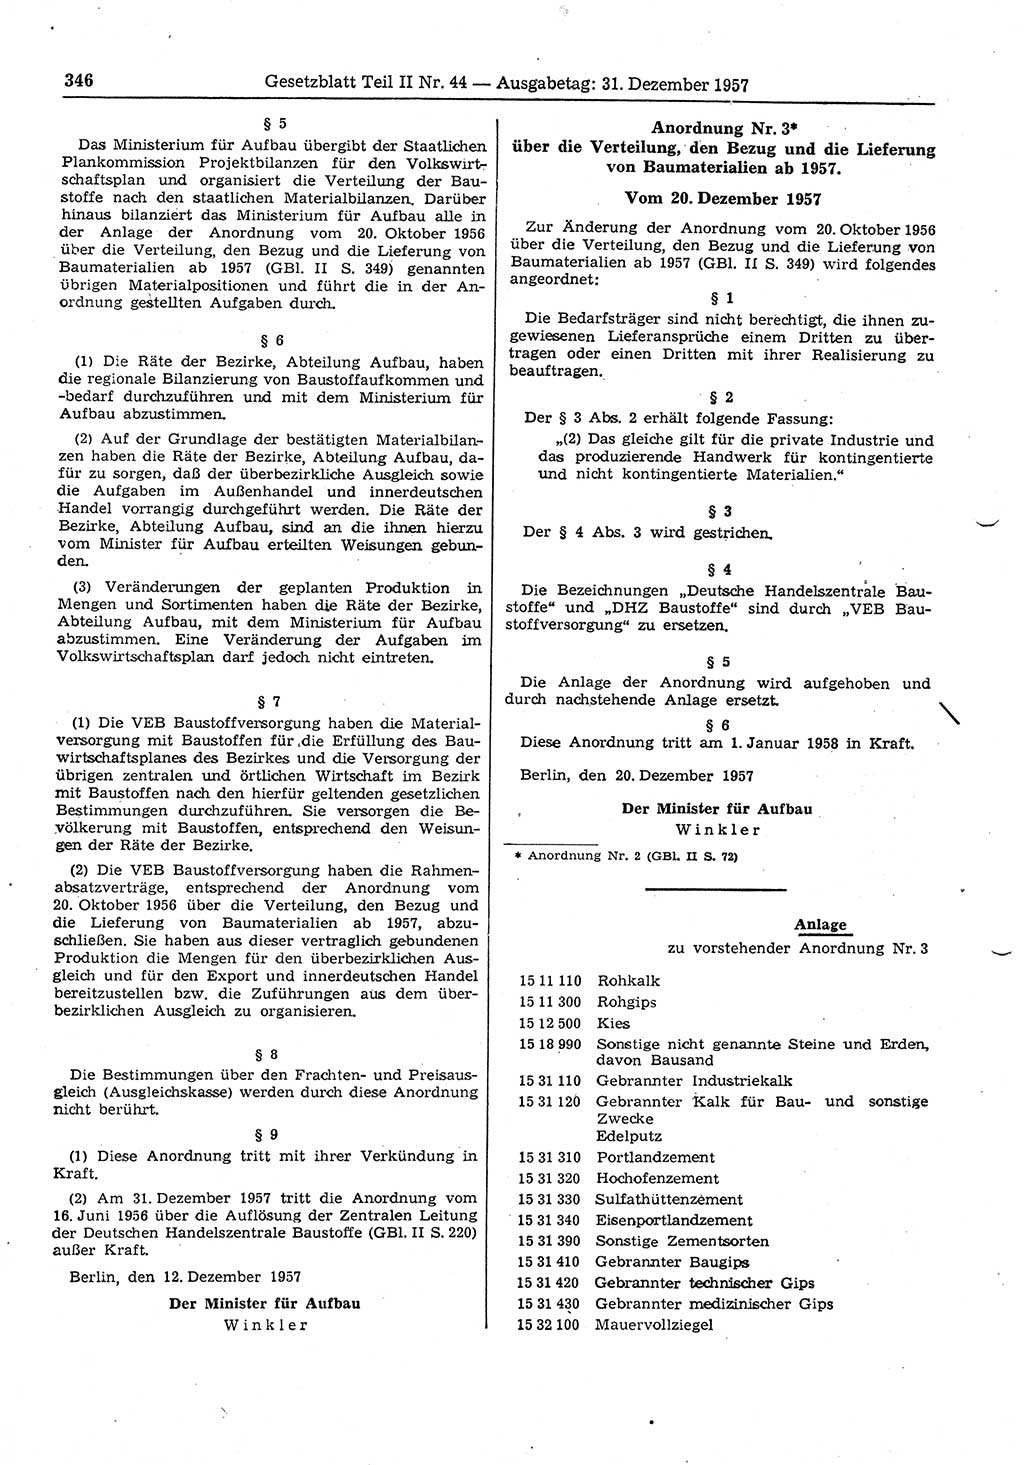 Gesetzblatt (GBl.) der Deutschen Demokratischen Republik (DDR) Teil ⅠⅠ 1957, Seite 346 (GBl. DDR ⅠⅠ 1957, S. 346)